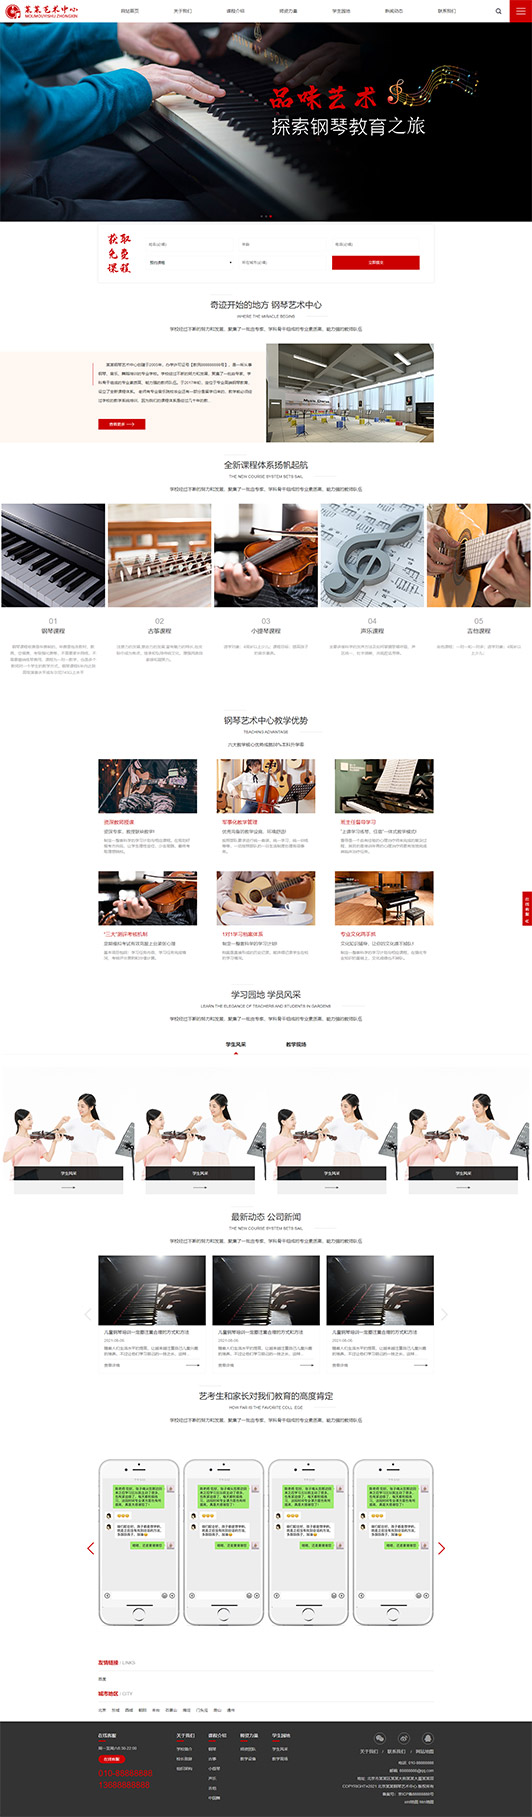 盐城钢琴艺术培训公司响应式企业网站